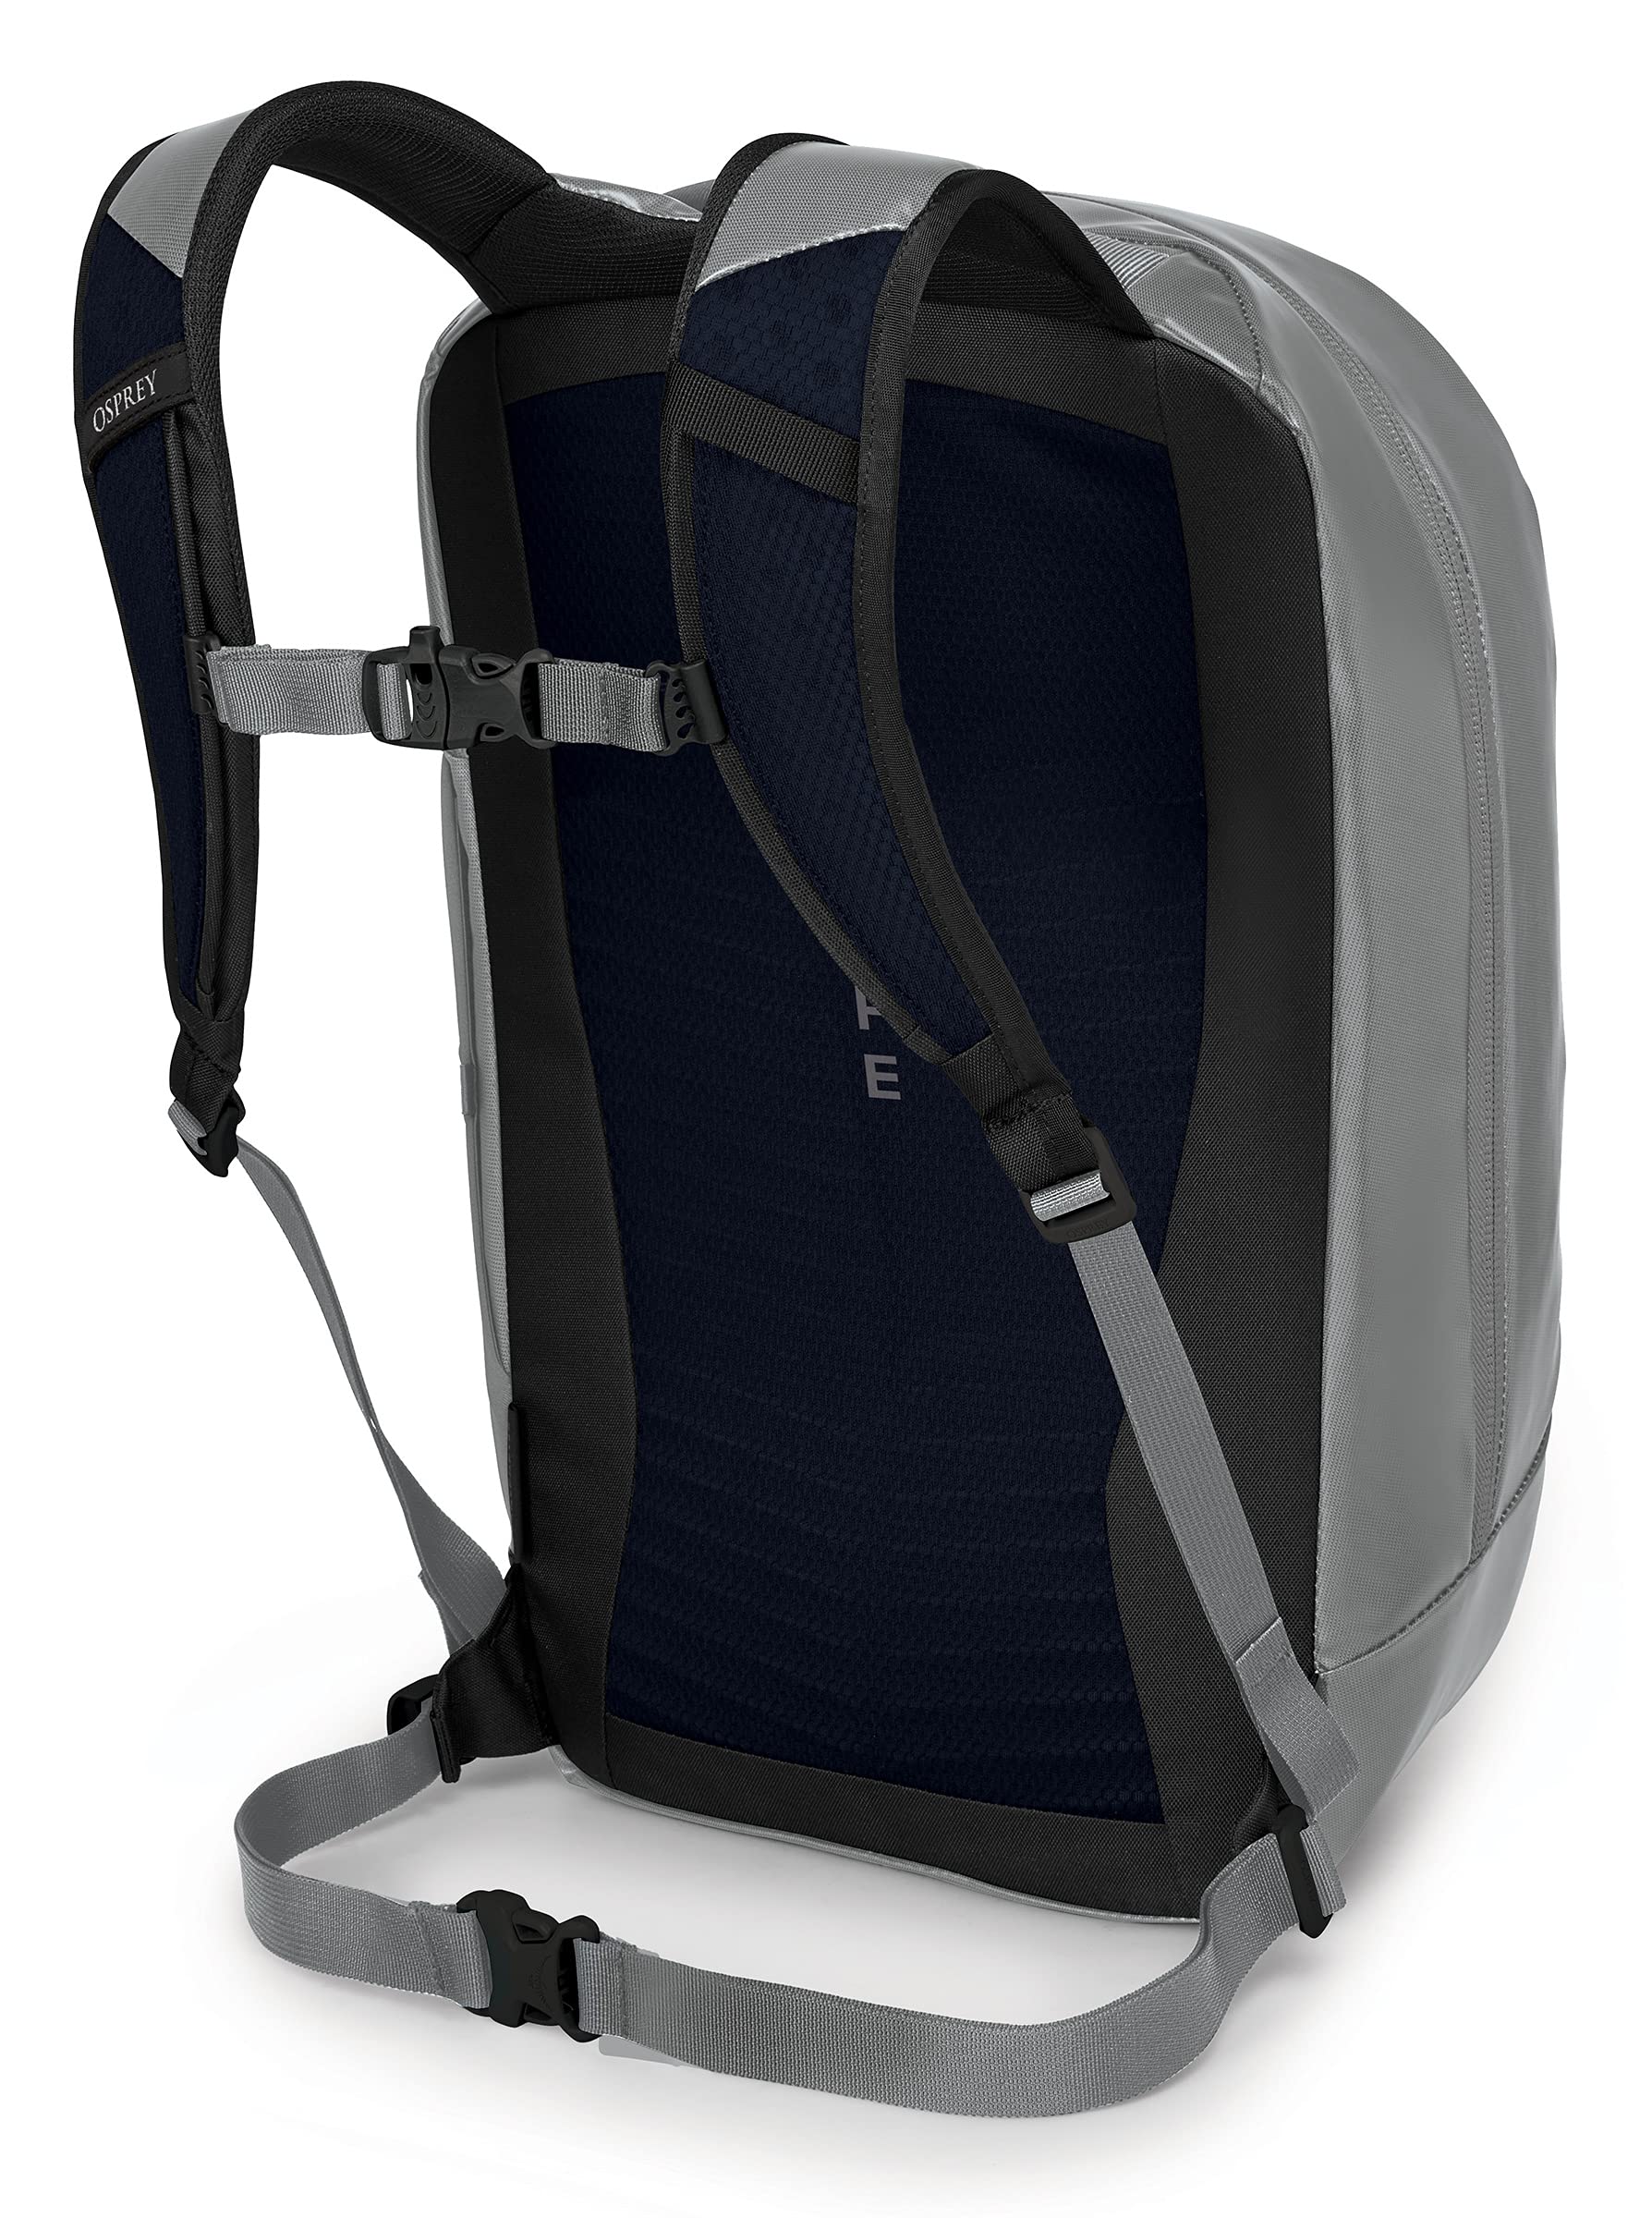 Osprey Transporter Panel Loader Commuter Backpack, Smoke Grey